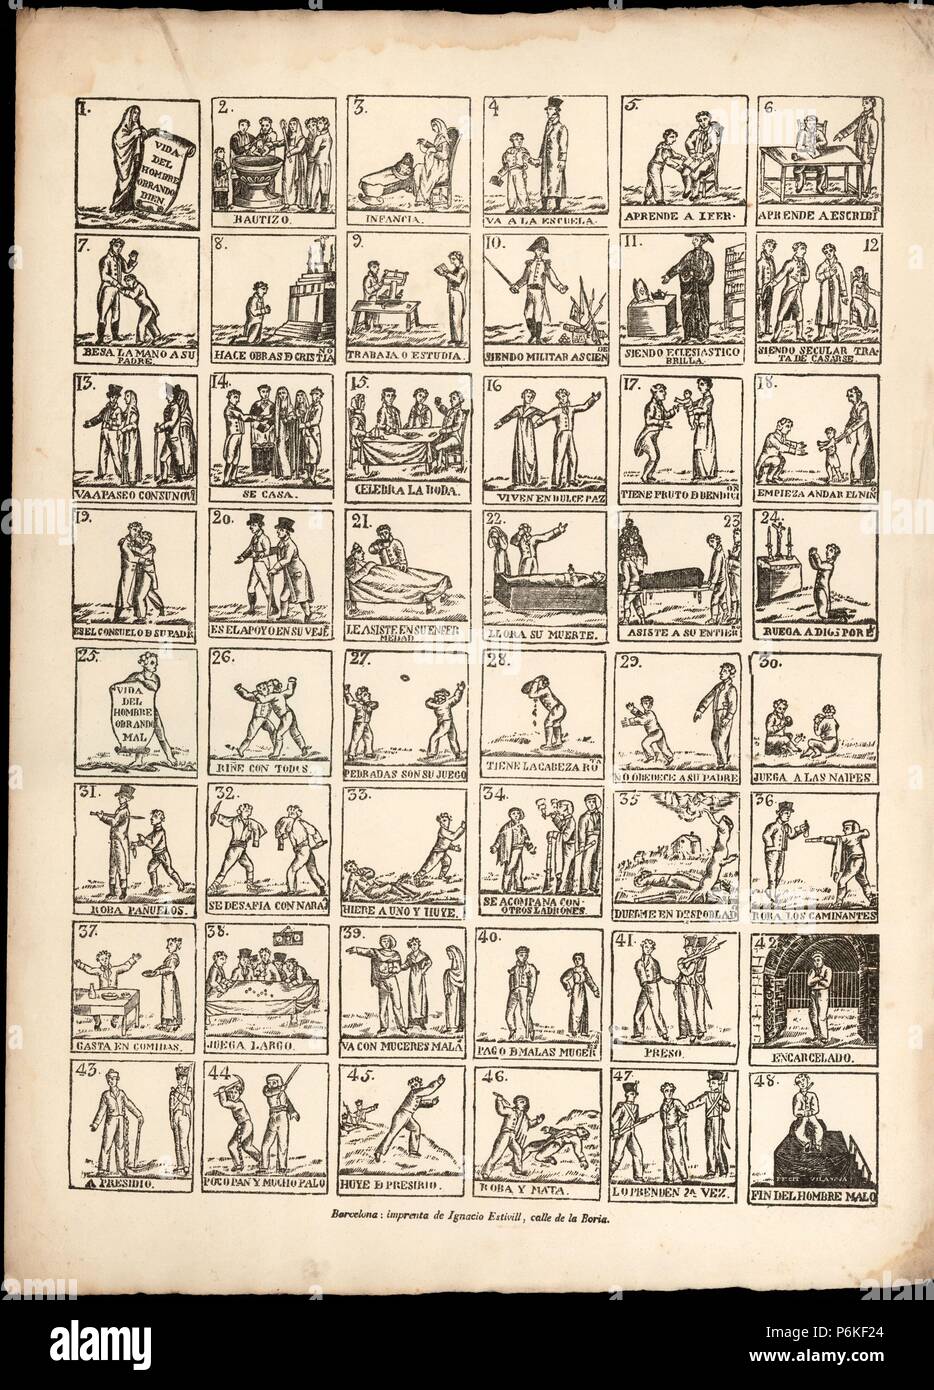 Aleluya dedicada a la Vida del hombre bueno y el hombre malo. Publicada en Barcelona, años 1840. Stock Photo